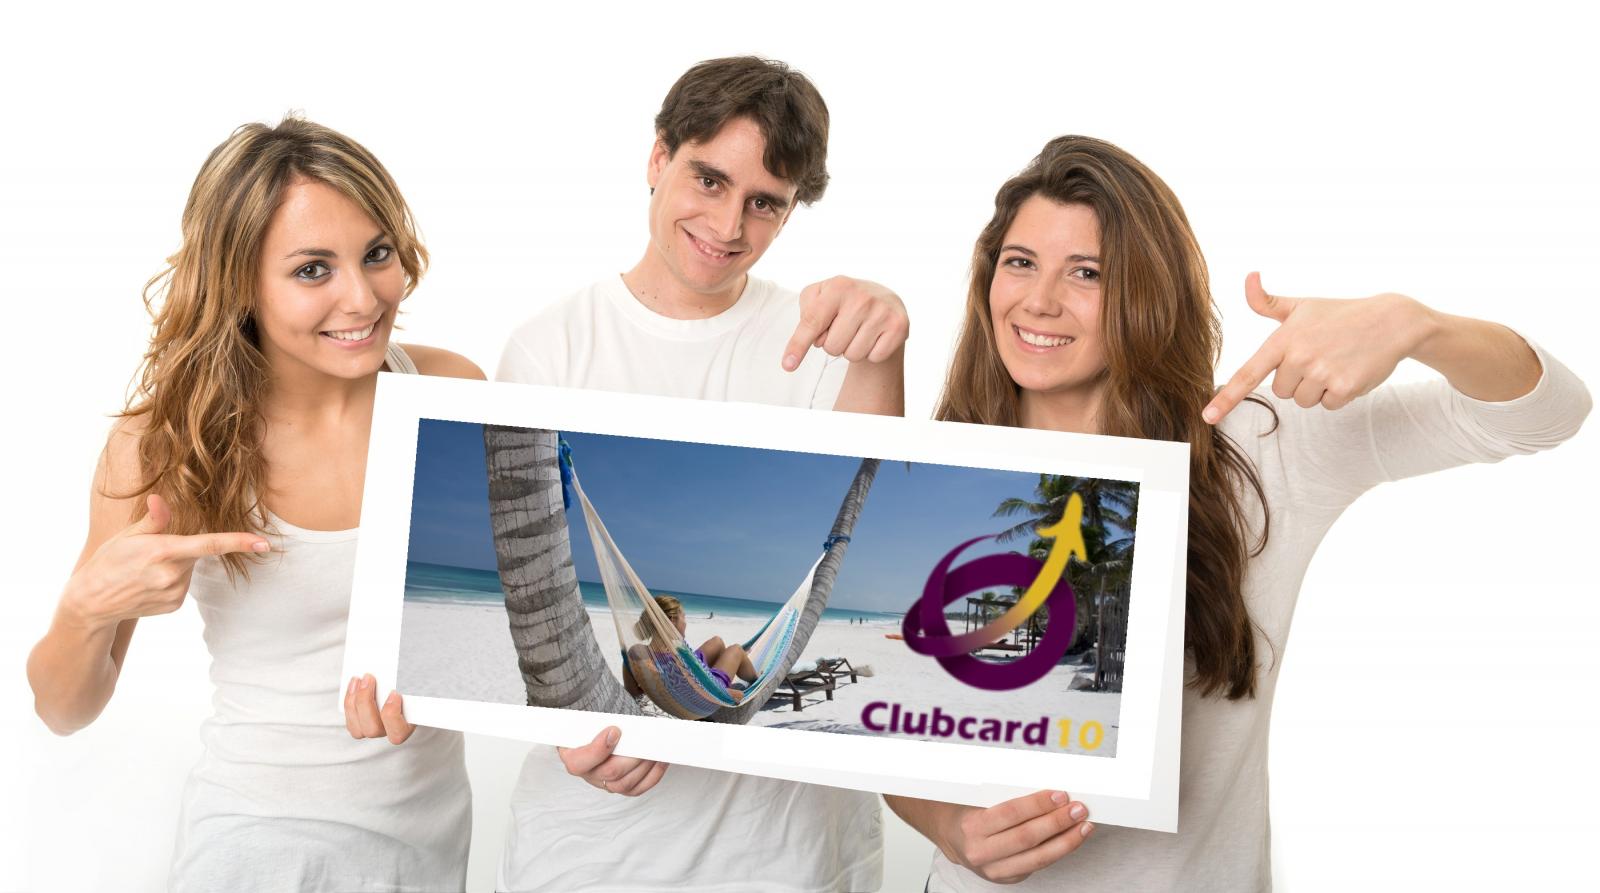 Clubcard10 espana